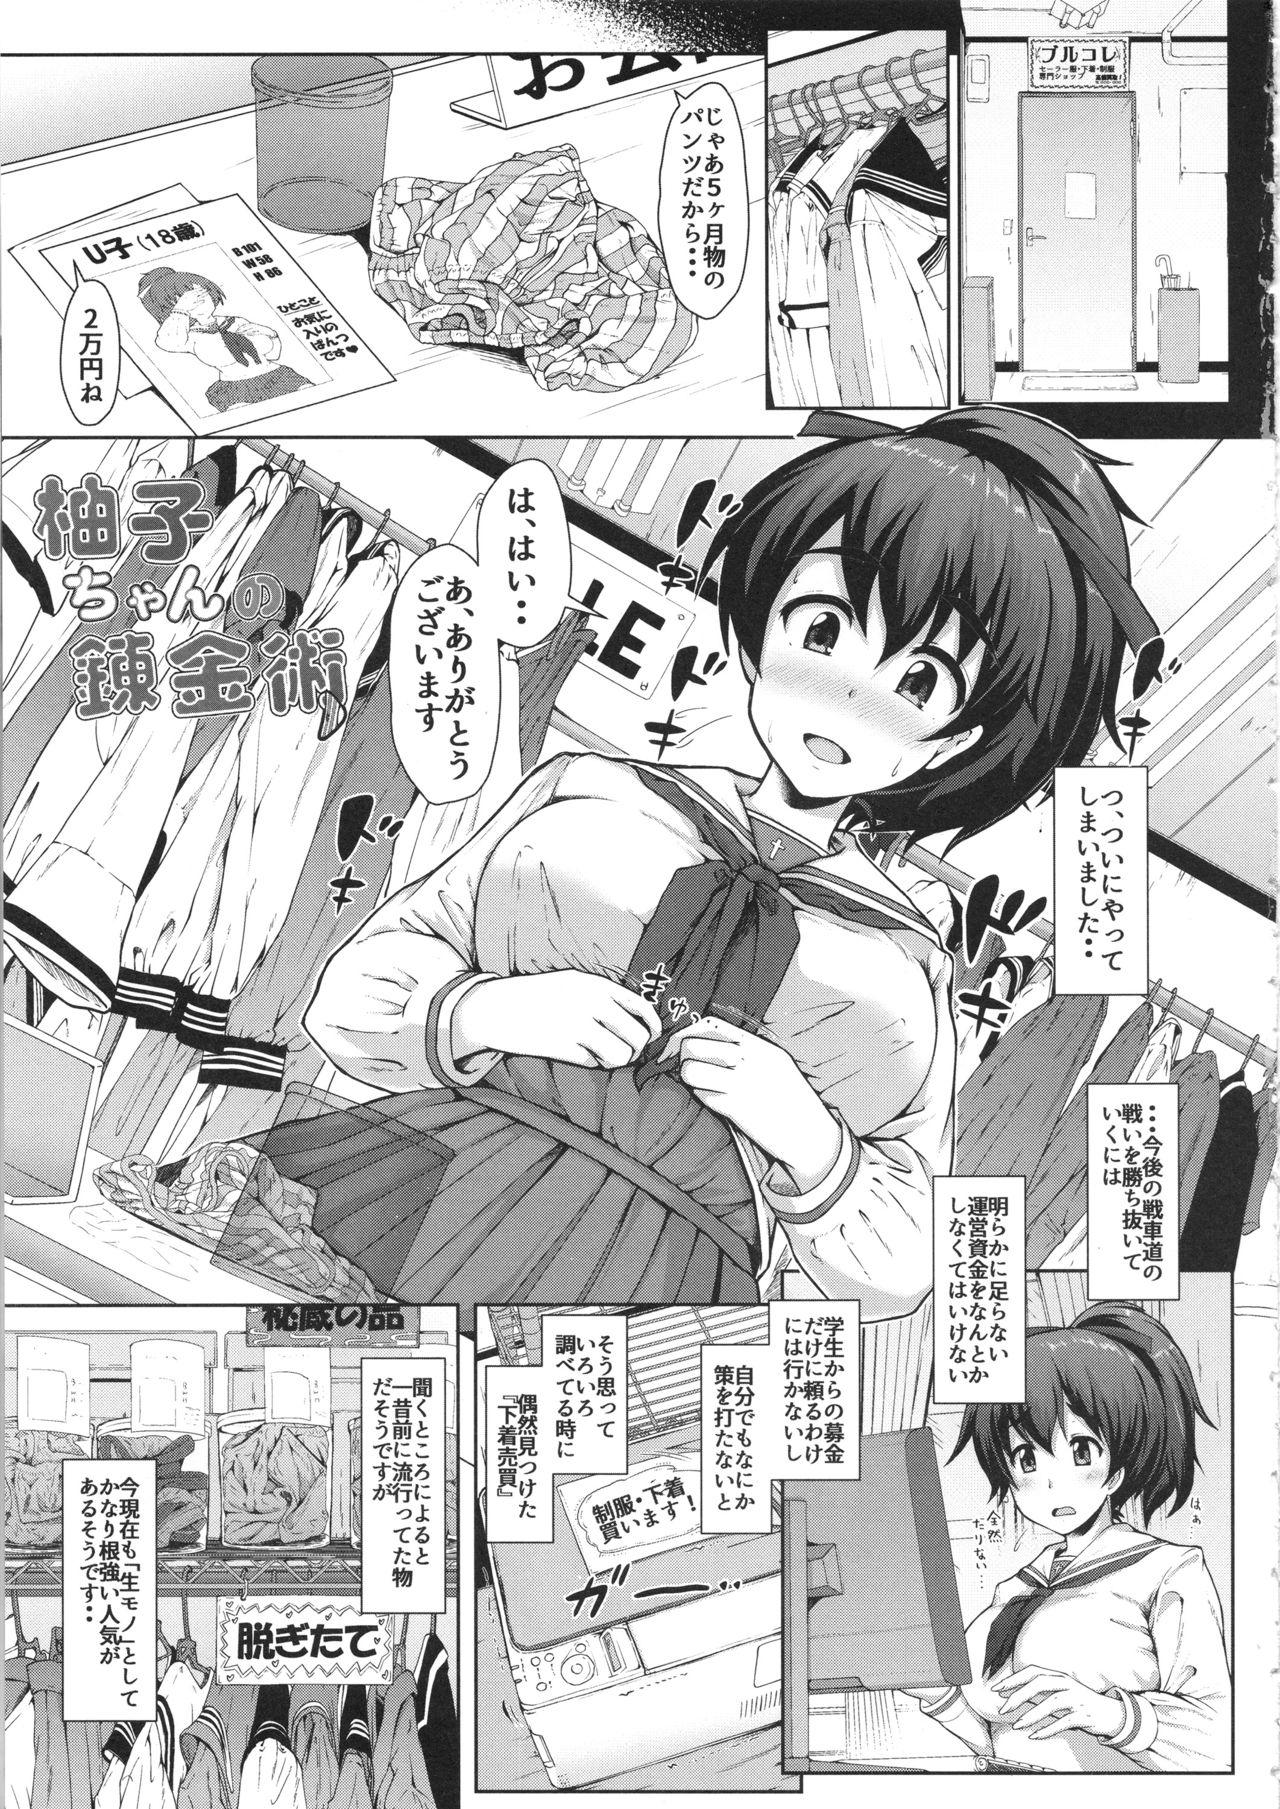 Hairypussy Yuzu-chan no Renkinjutsu - Girls und panzer Perverted - Page 2